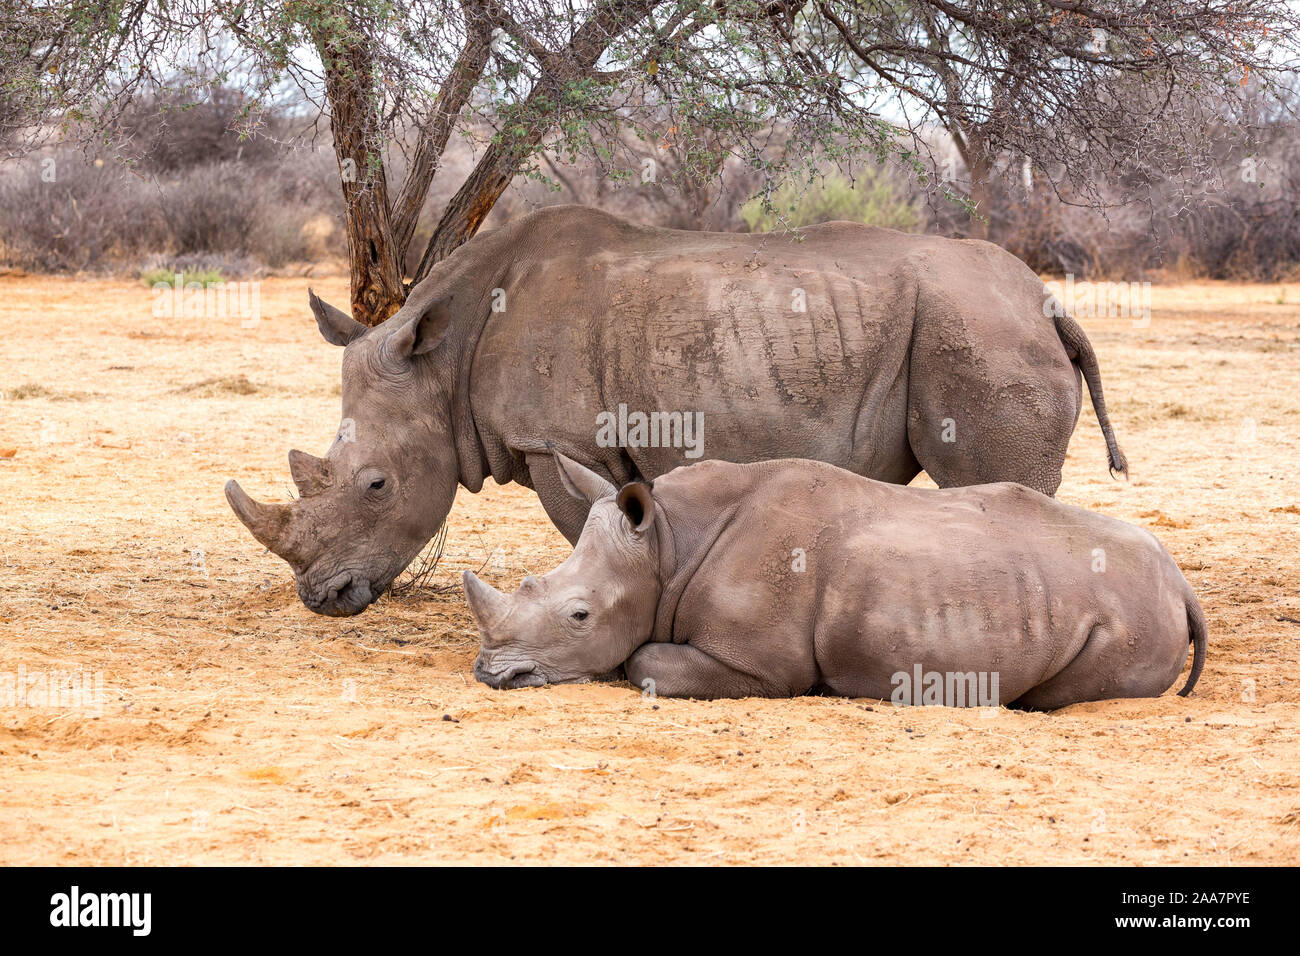 Deux rhinocéros blancs, la mère avec sa progéniture se reposant dans l'ombre, la Namibie, l'Afrique Banque D'Images